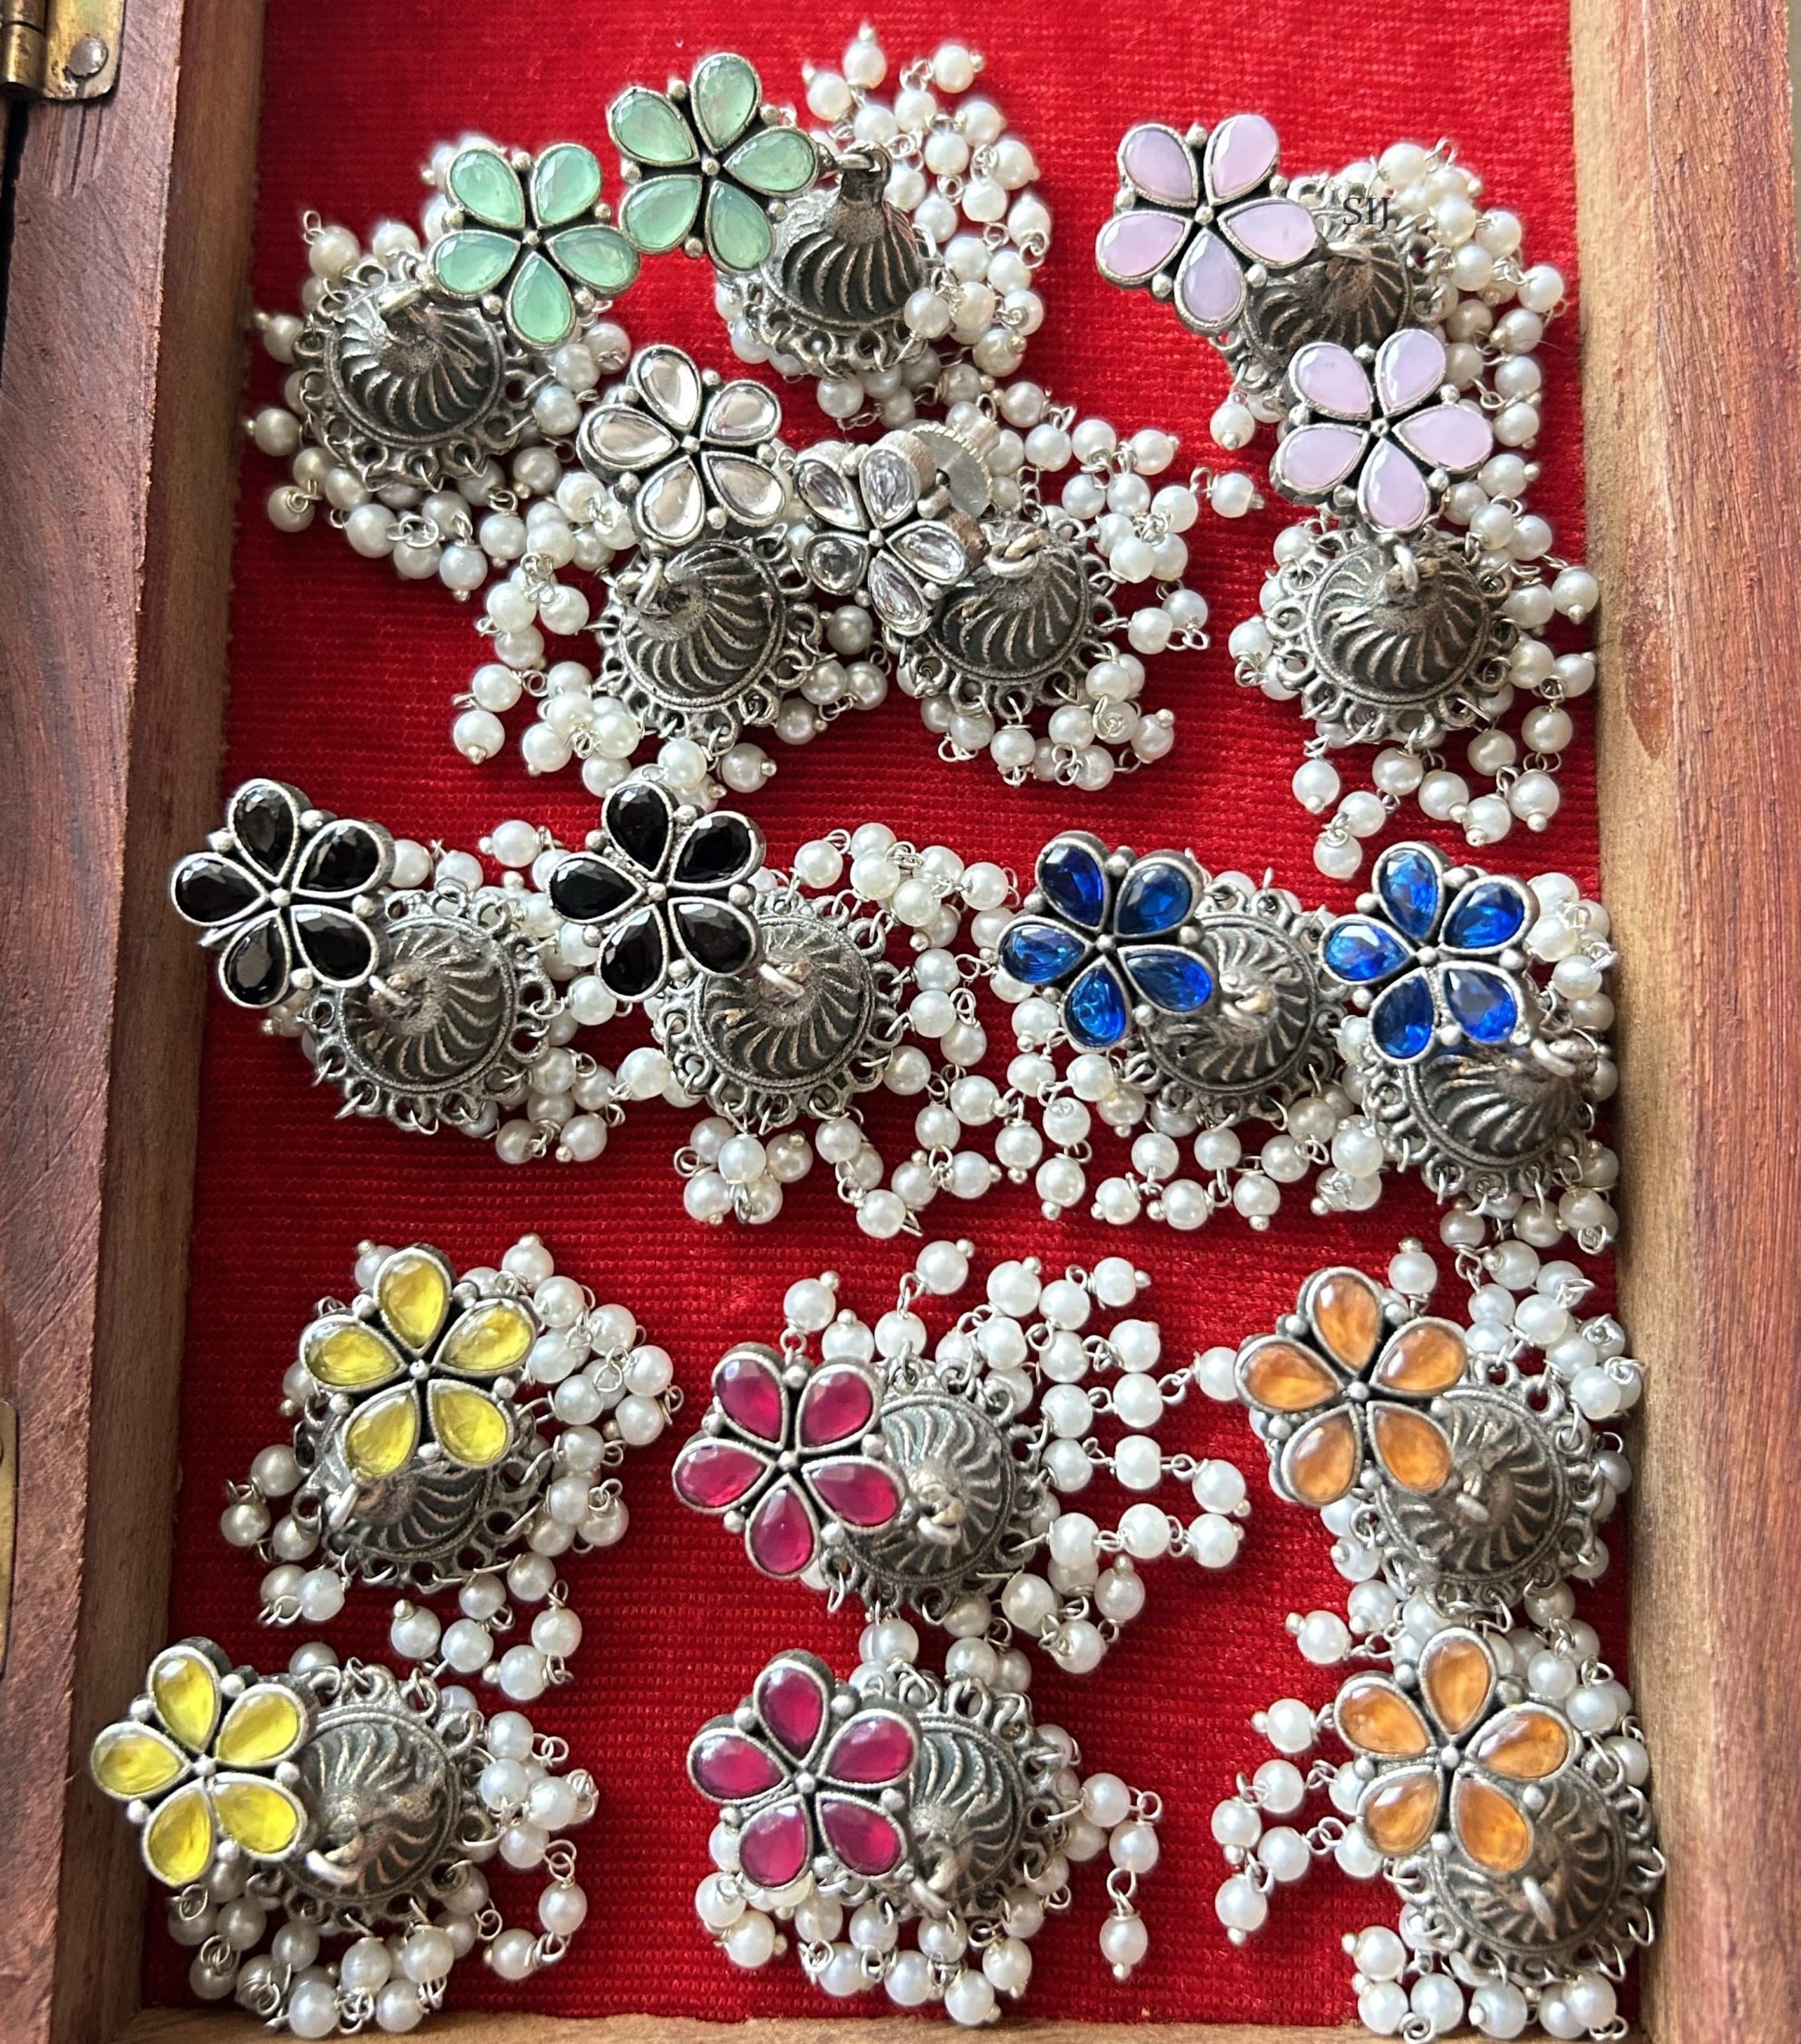 German Silver Flower Earrings with Pearl Jhumkas